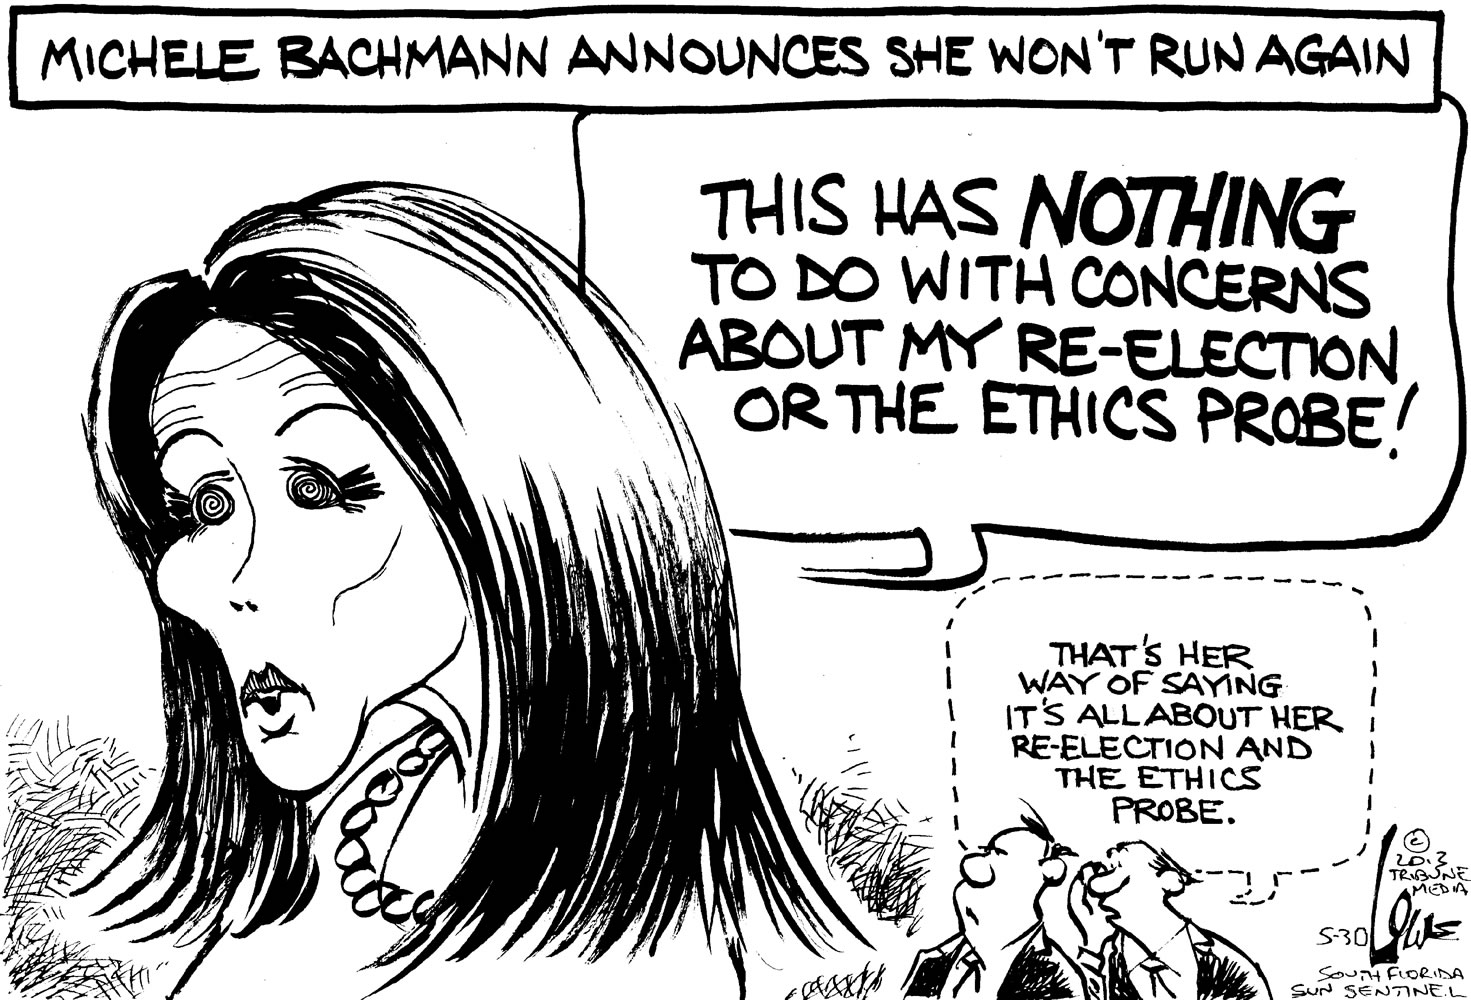 Bachmann Explains